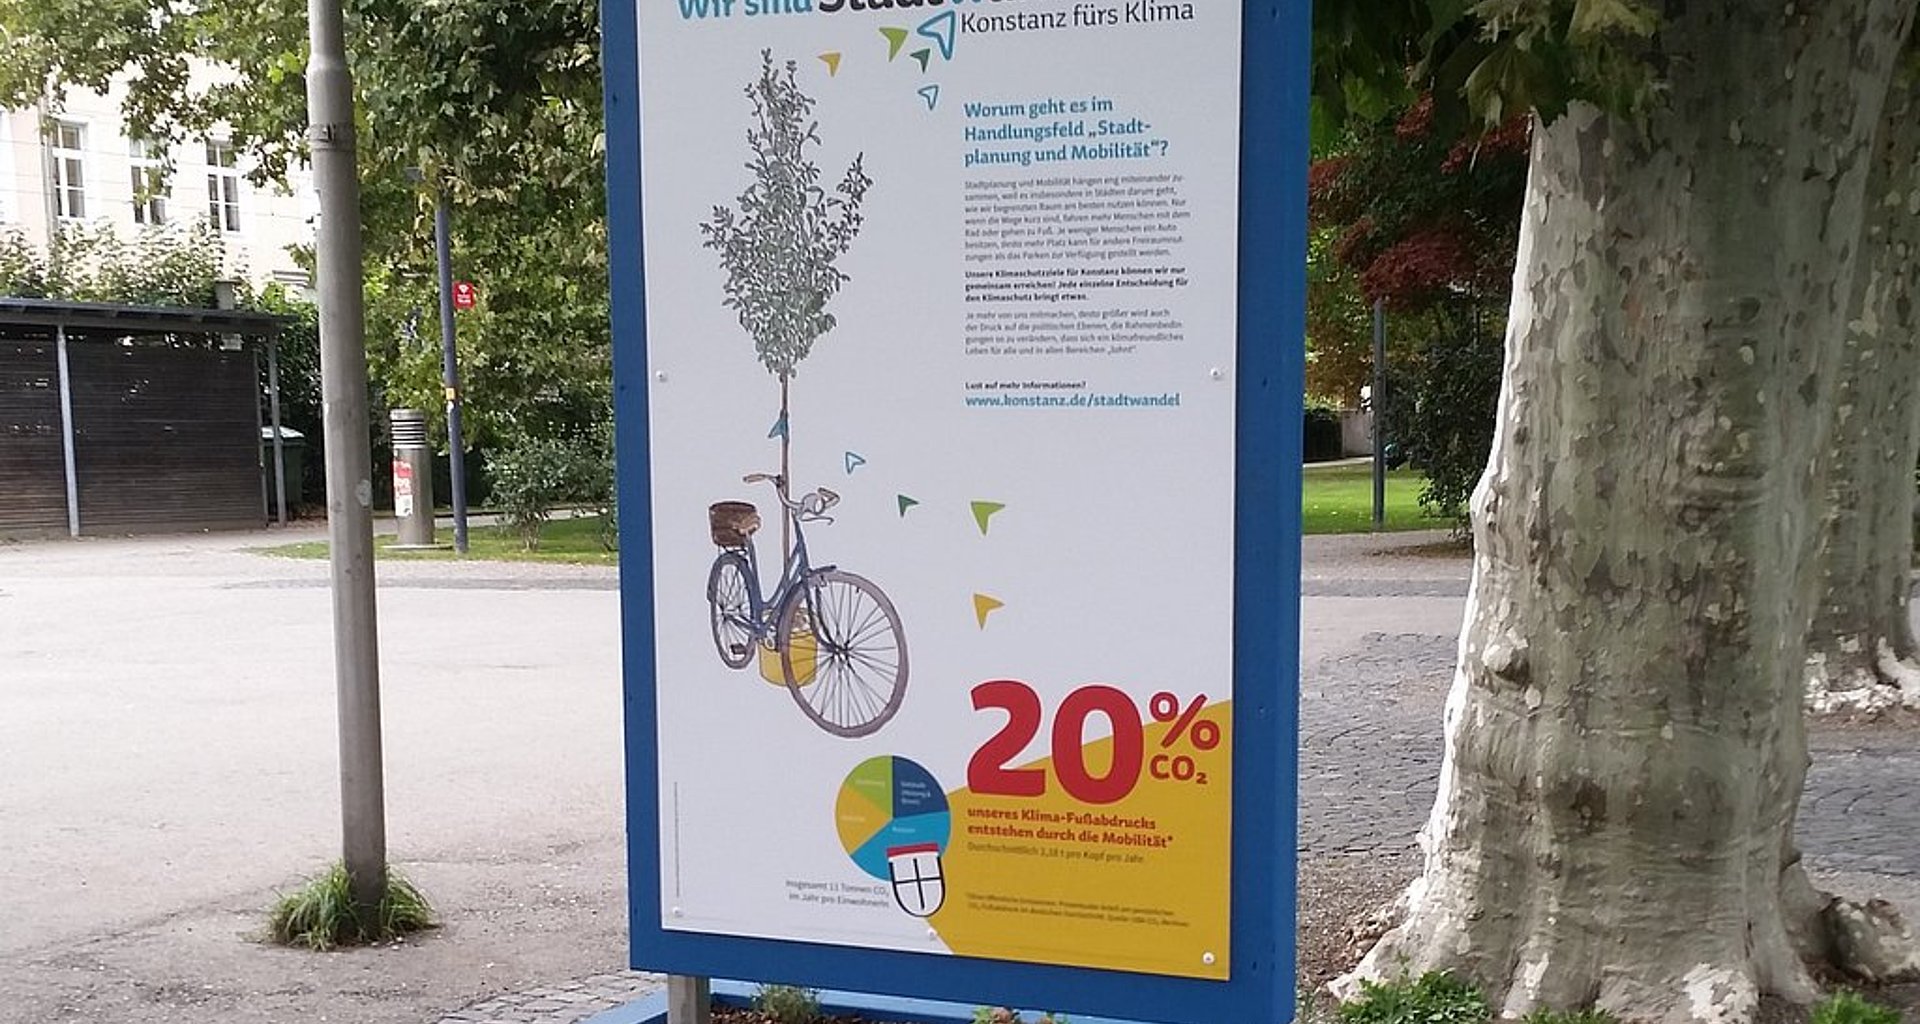 Bild zeigt eine Infostele in Konstanz. Sie trägt die Aufschrift "Stadtwandel – Konstanz fürs Klima" und enthält Informationen zur Kampagne.